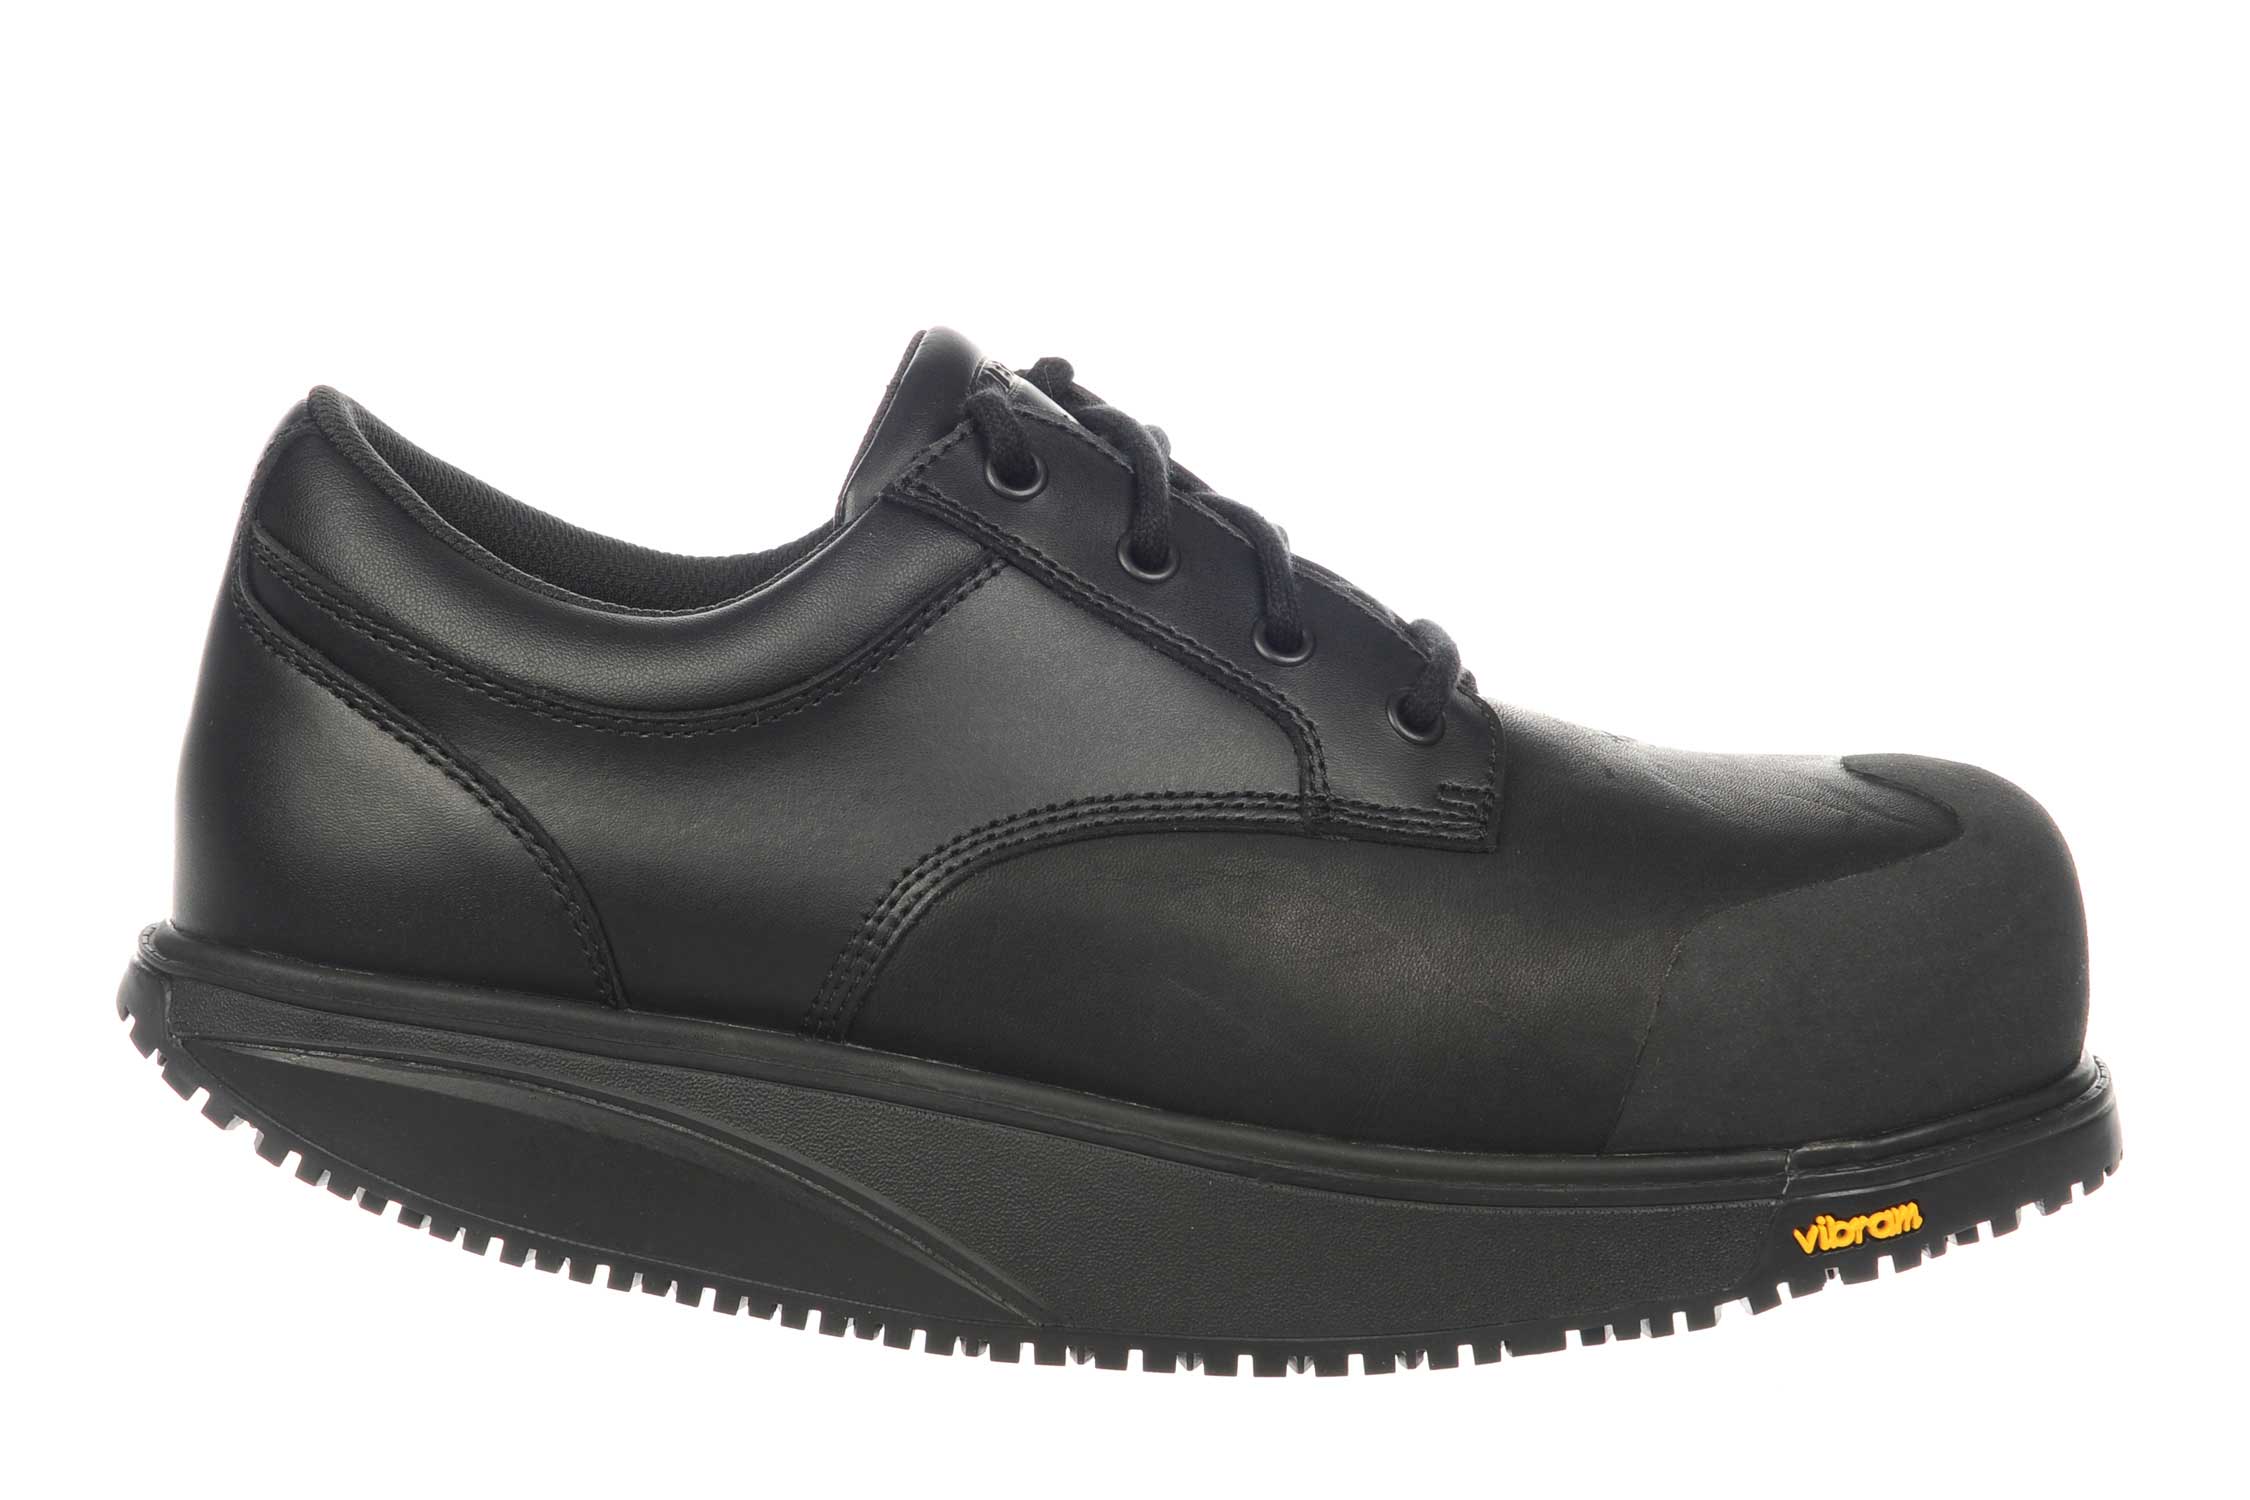 MBT Shoes Men's Omega Safety Work & Comfort Shoe | eBay